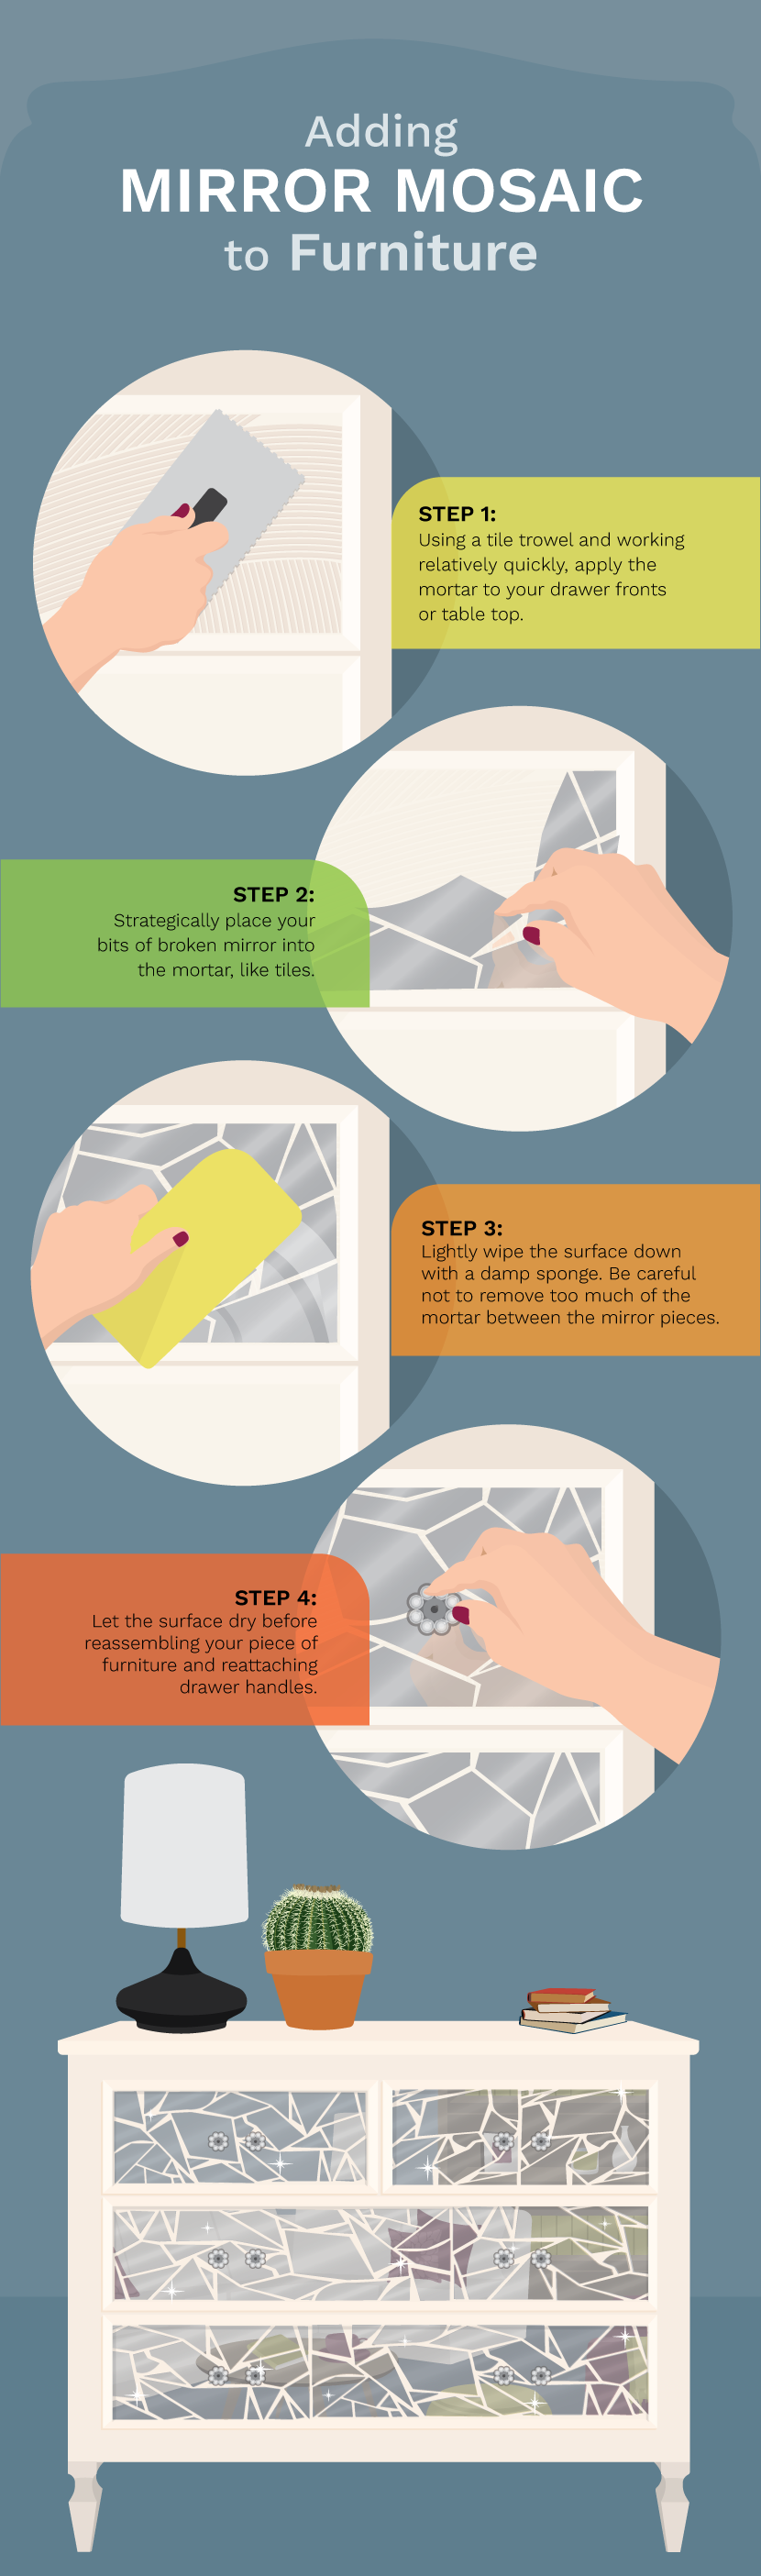 How to Fix Broken Glassware